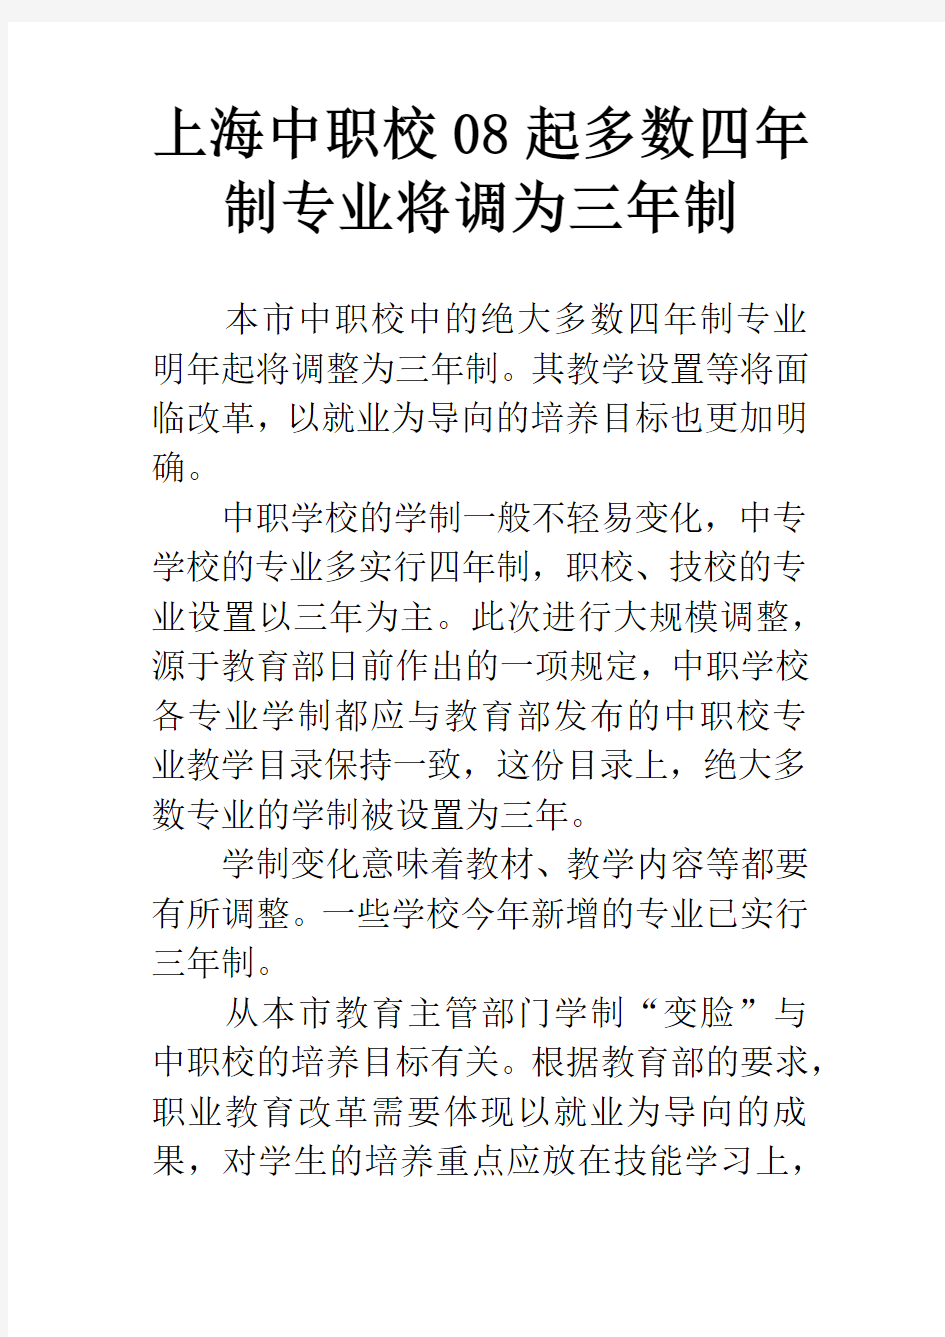 上海中职校08起多数四年制专业将调为三年制